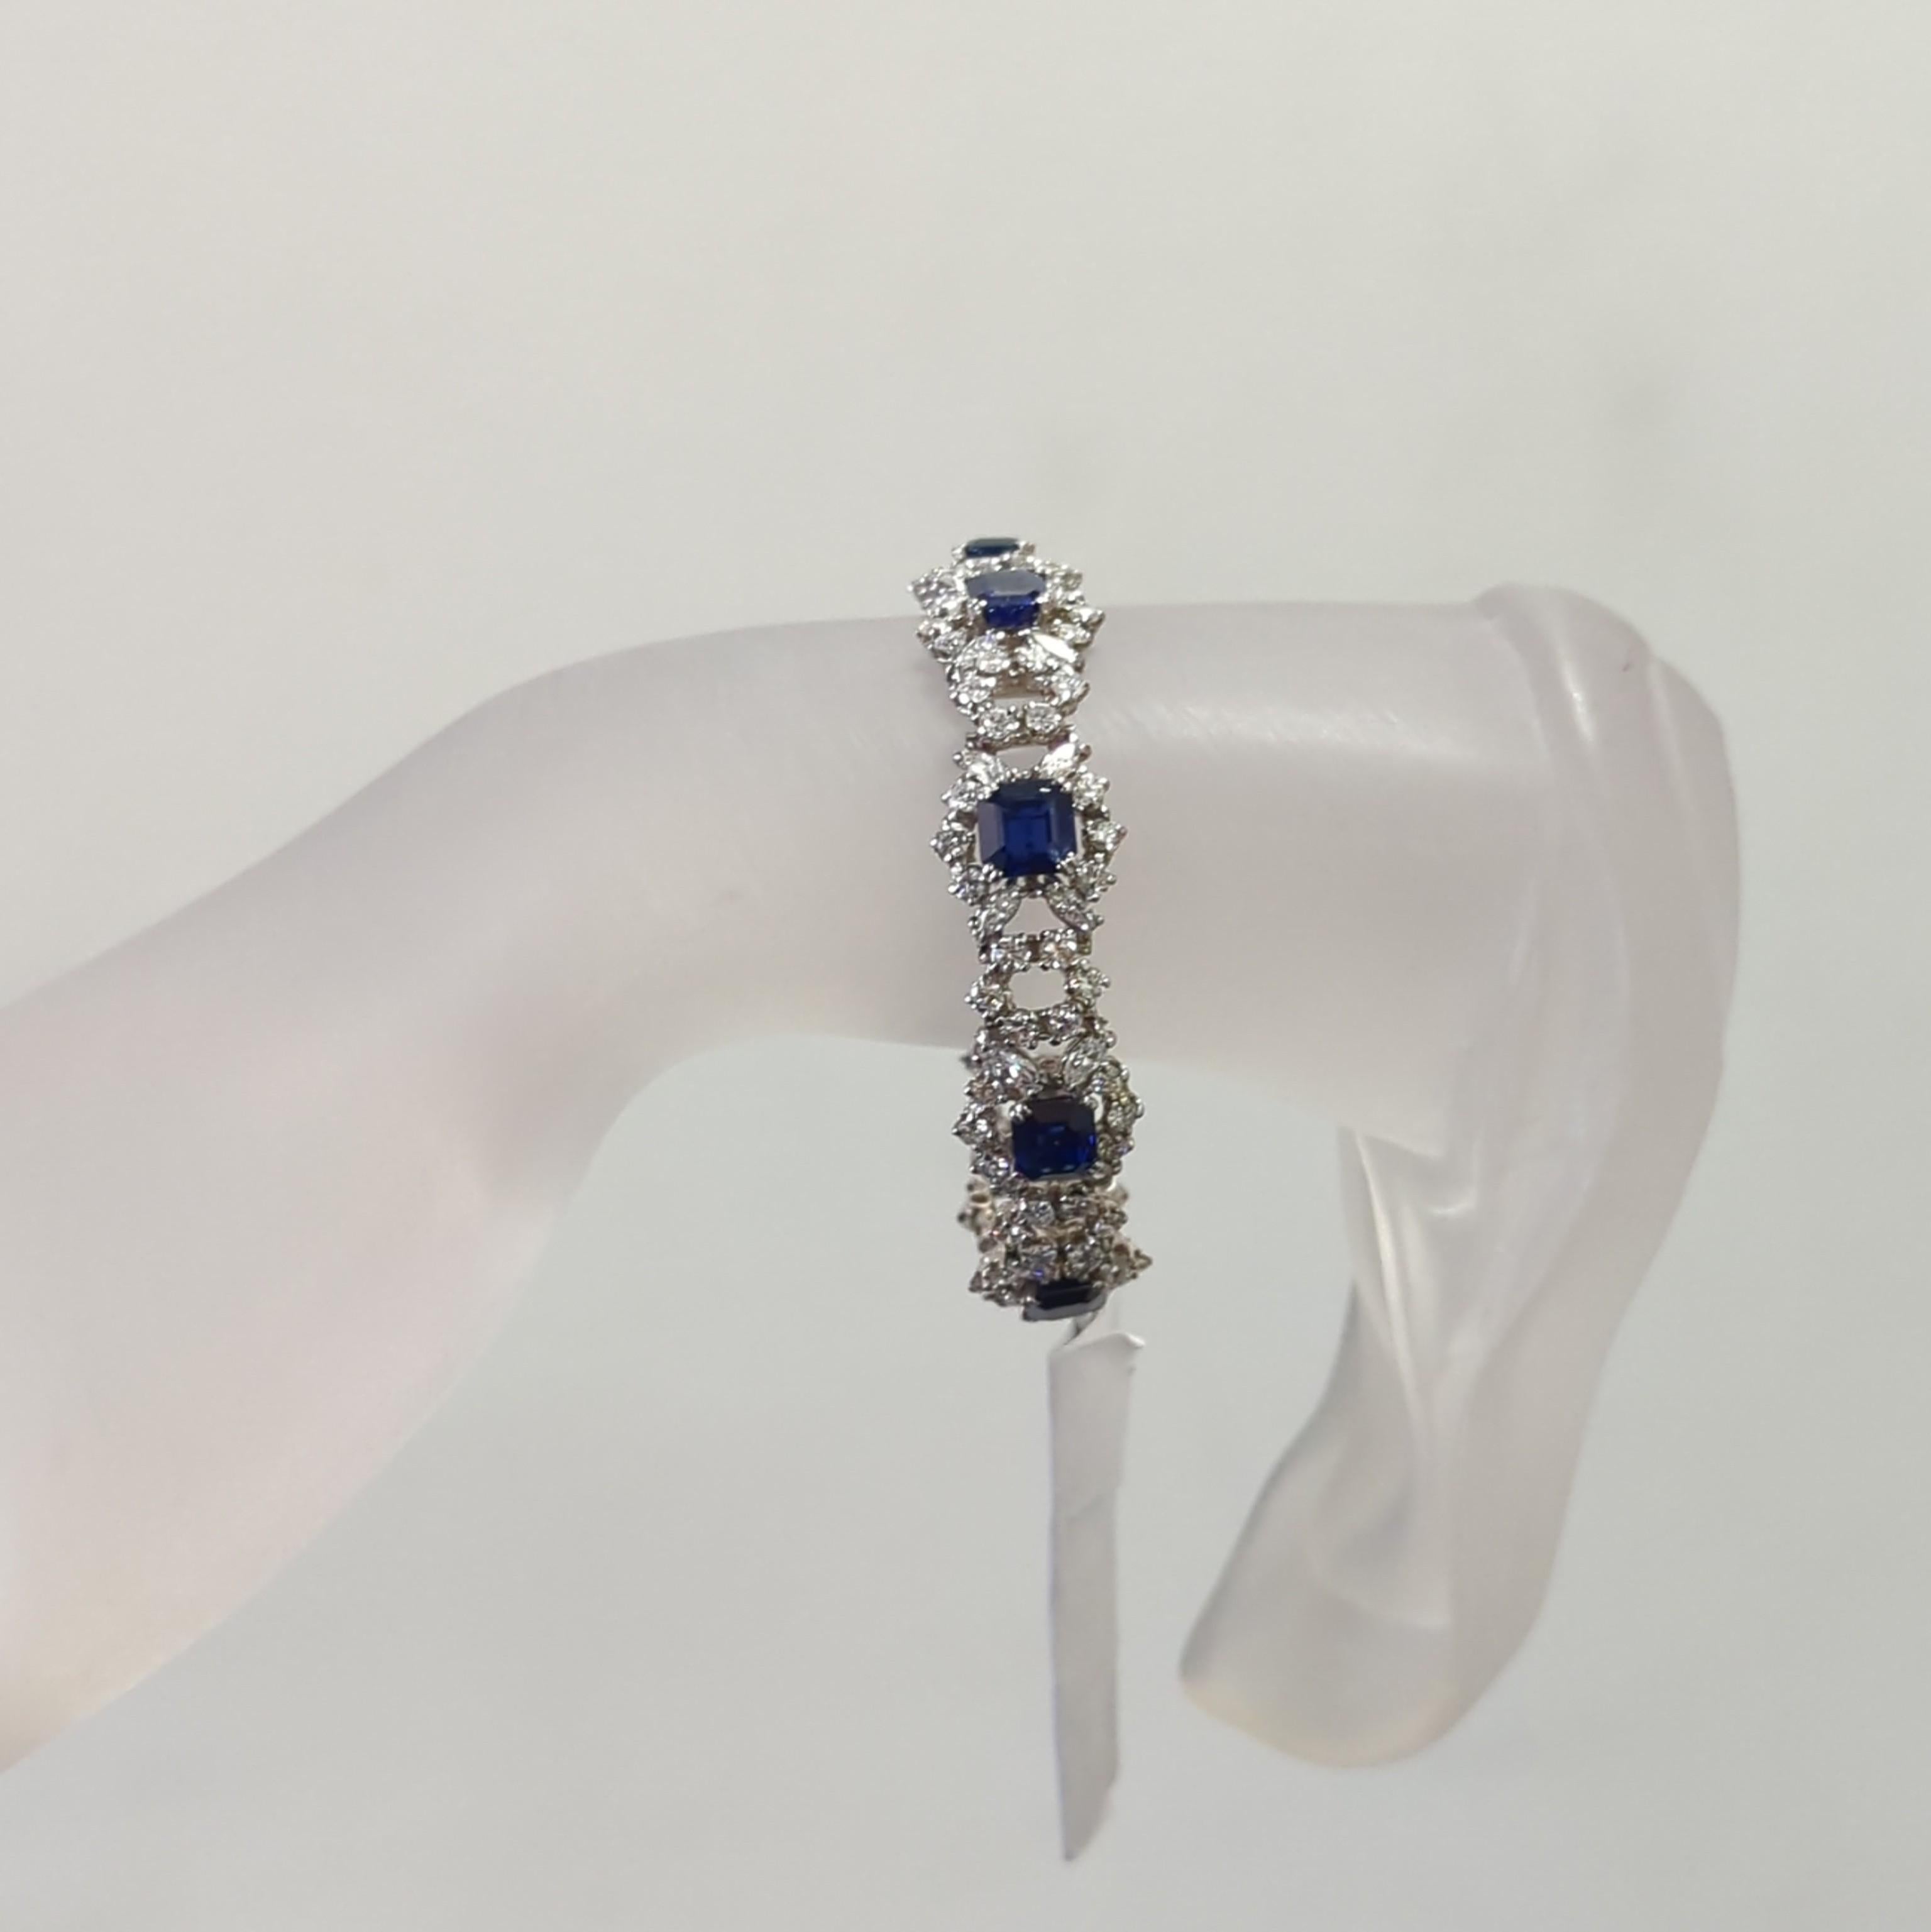 Wunderschöner 12,50 ct. hellblauer Saphir in Achteckform (8 Steine insgesamt) mit weißen Marquisen und runden Diamanten guter Qualität.  Handgefertigt in Platin.  Dieses Armband ist eine großartige Ergänzung für jede Schmucksammlung und eine